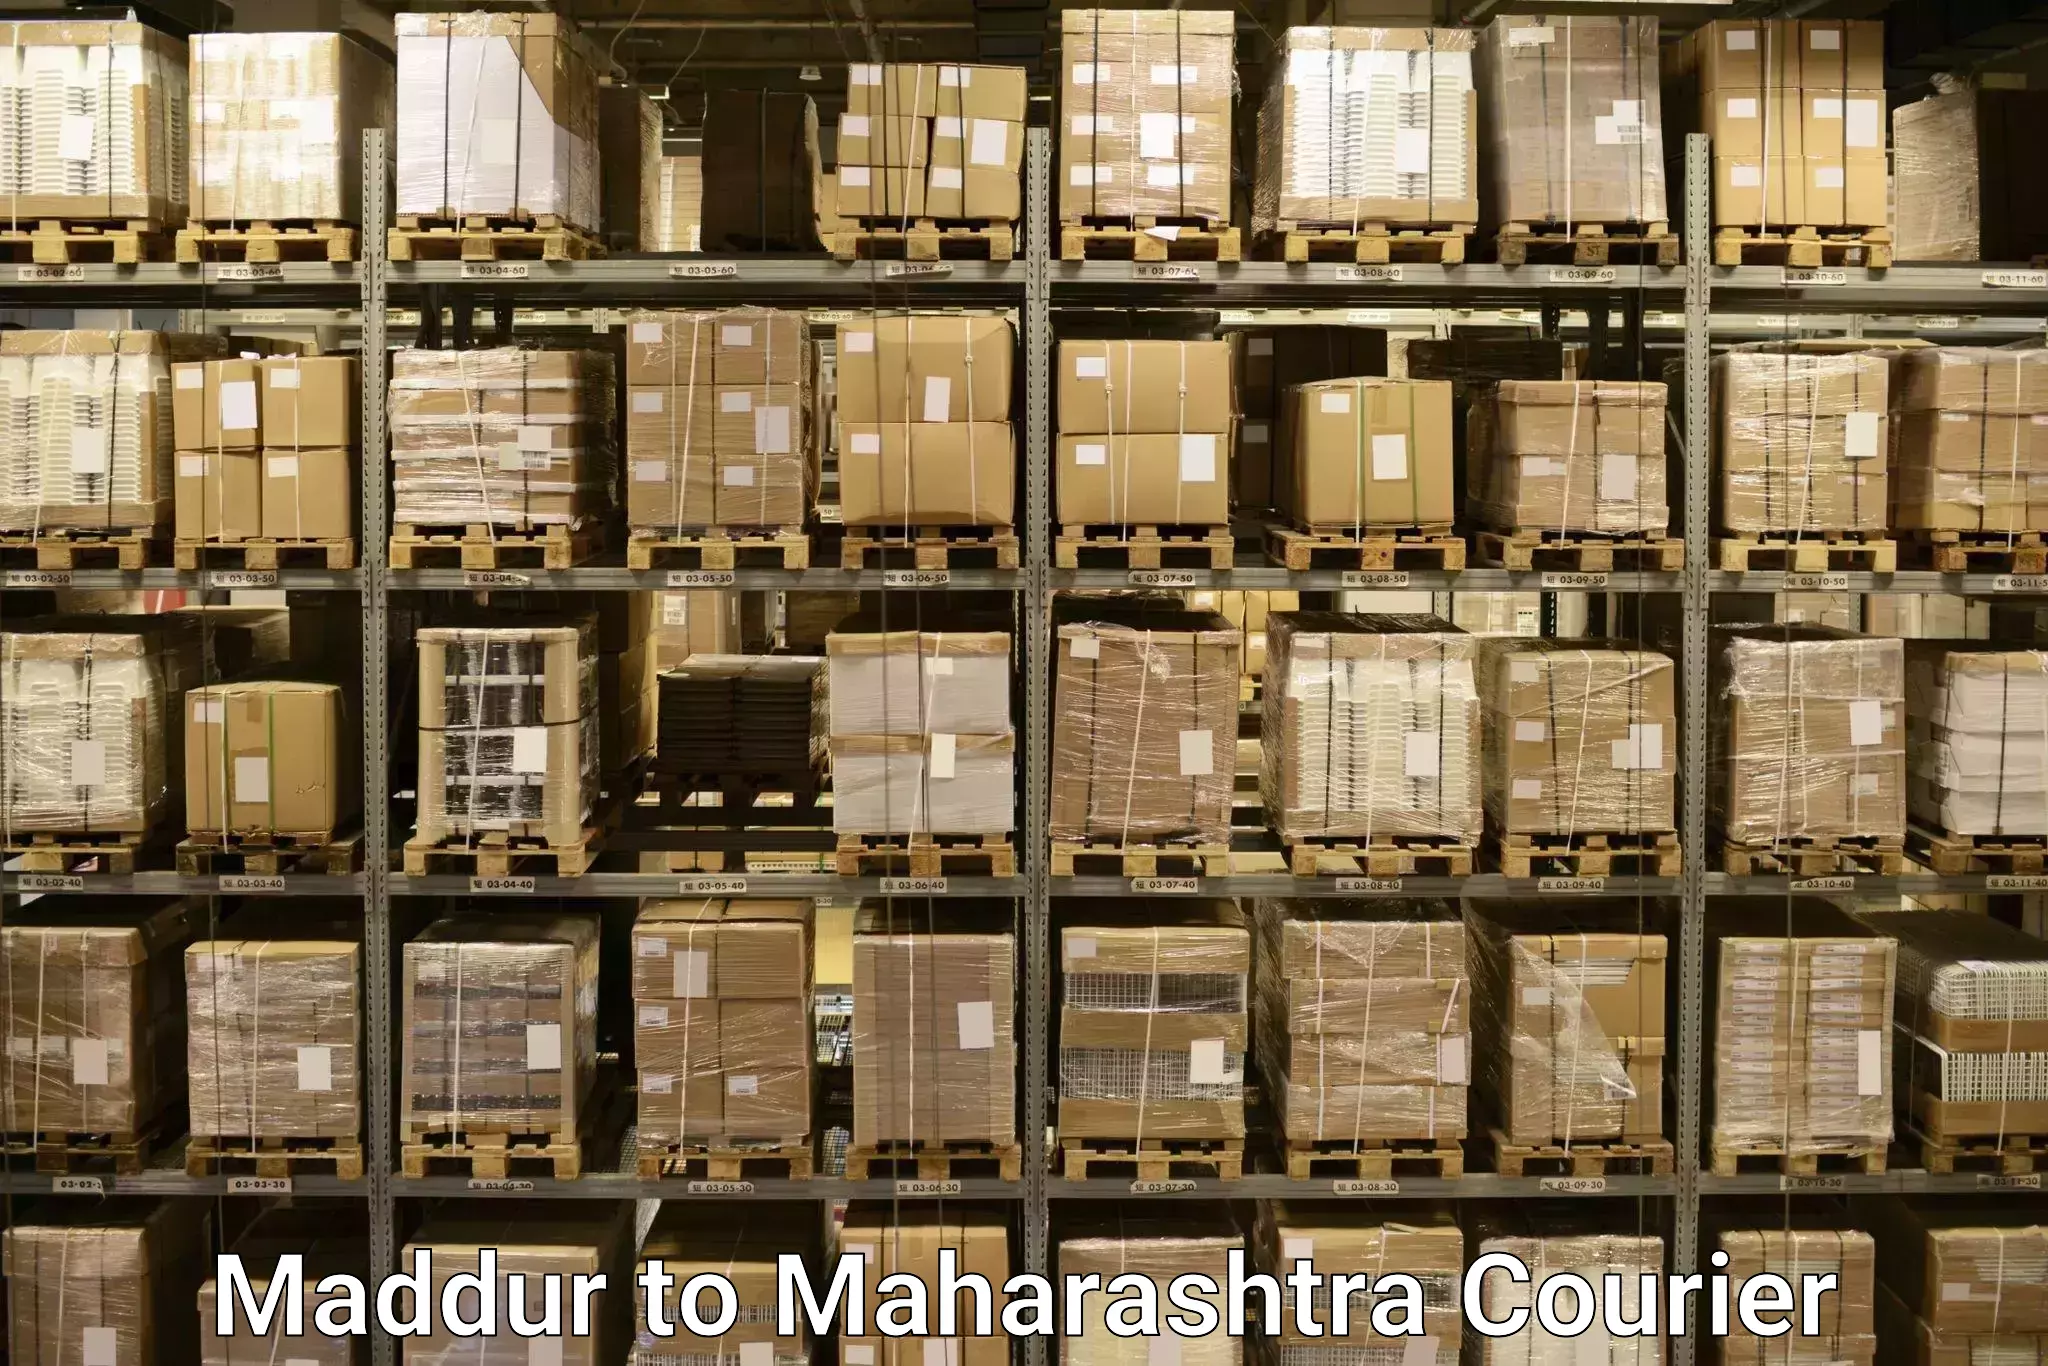 Weekend baggage shipping Maddur to Maharashtra